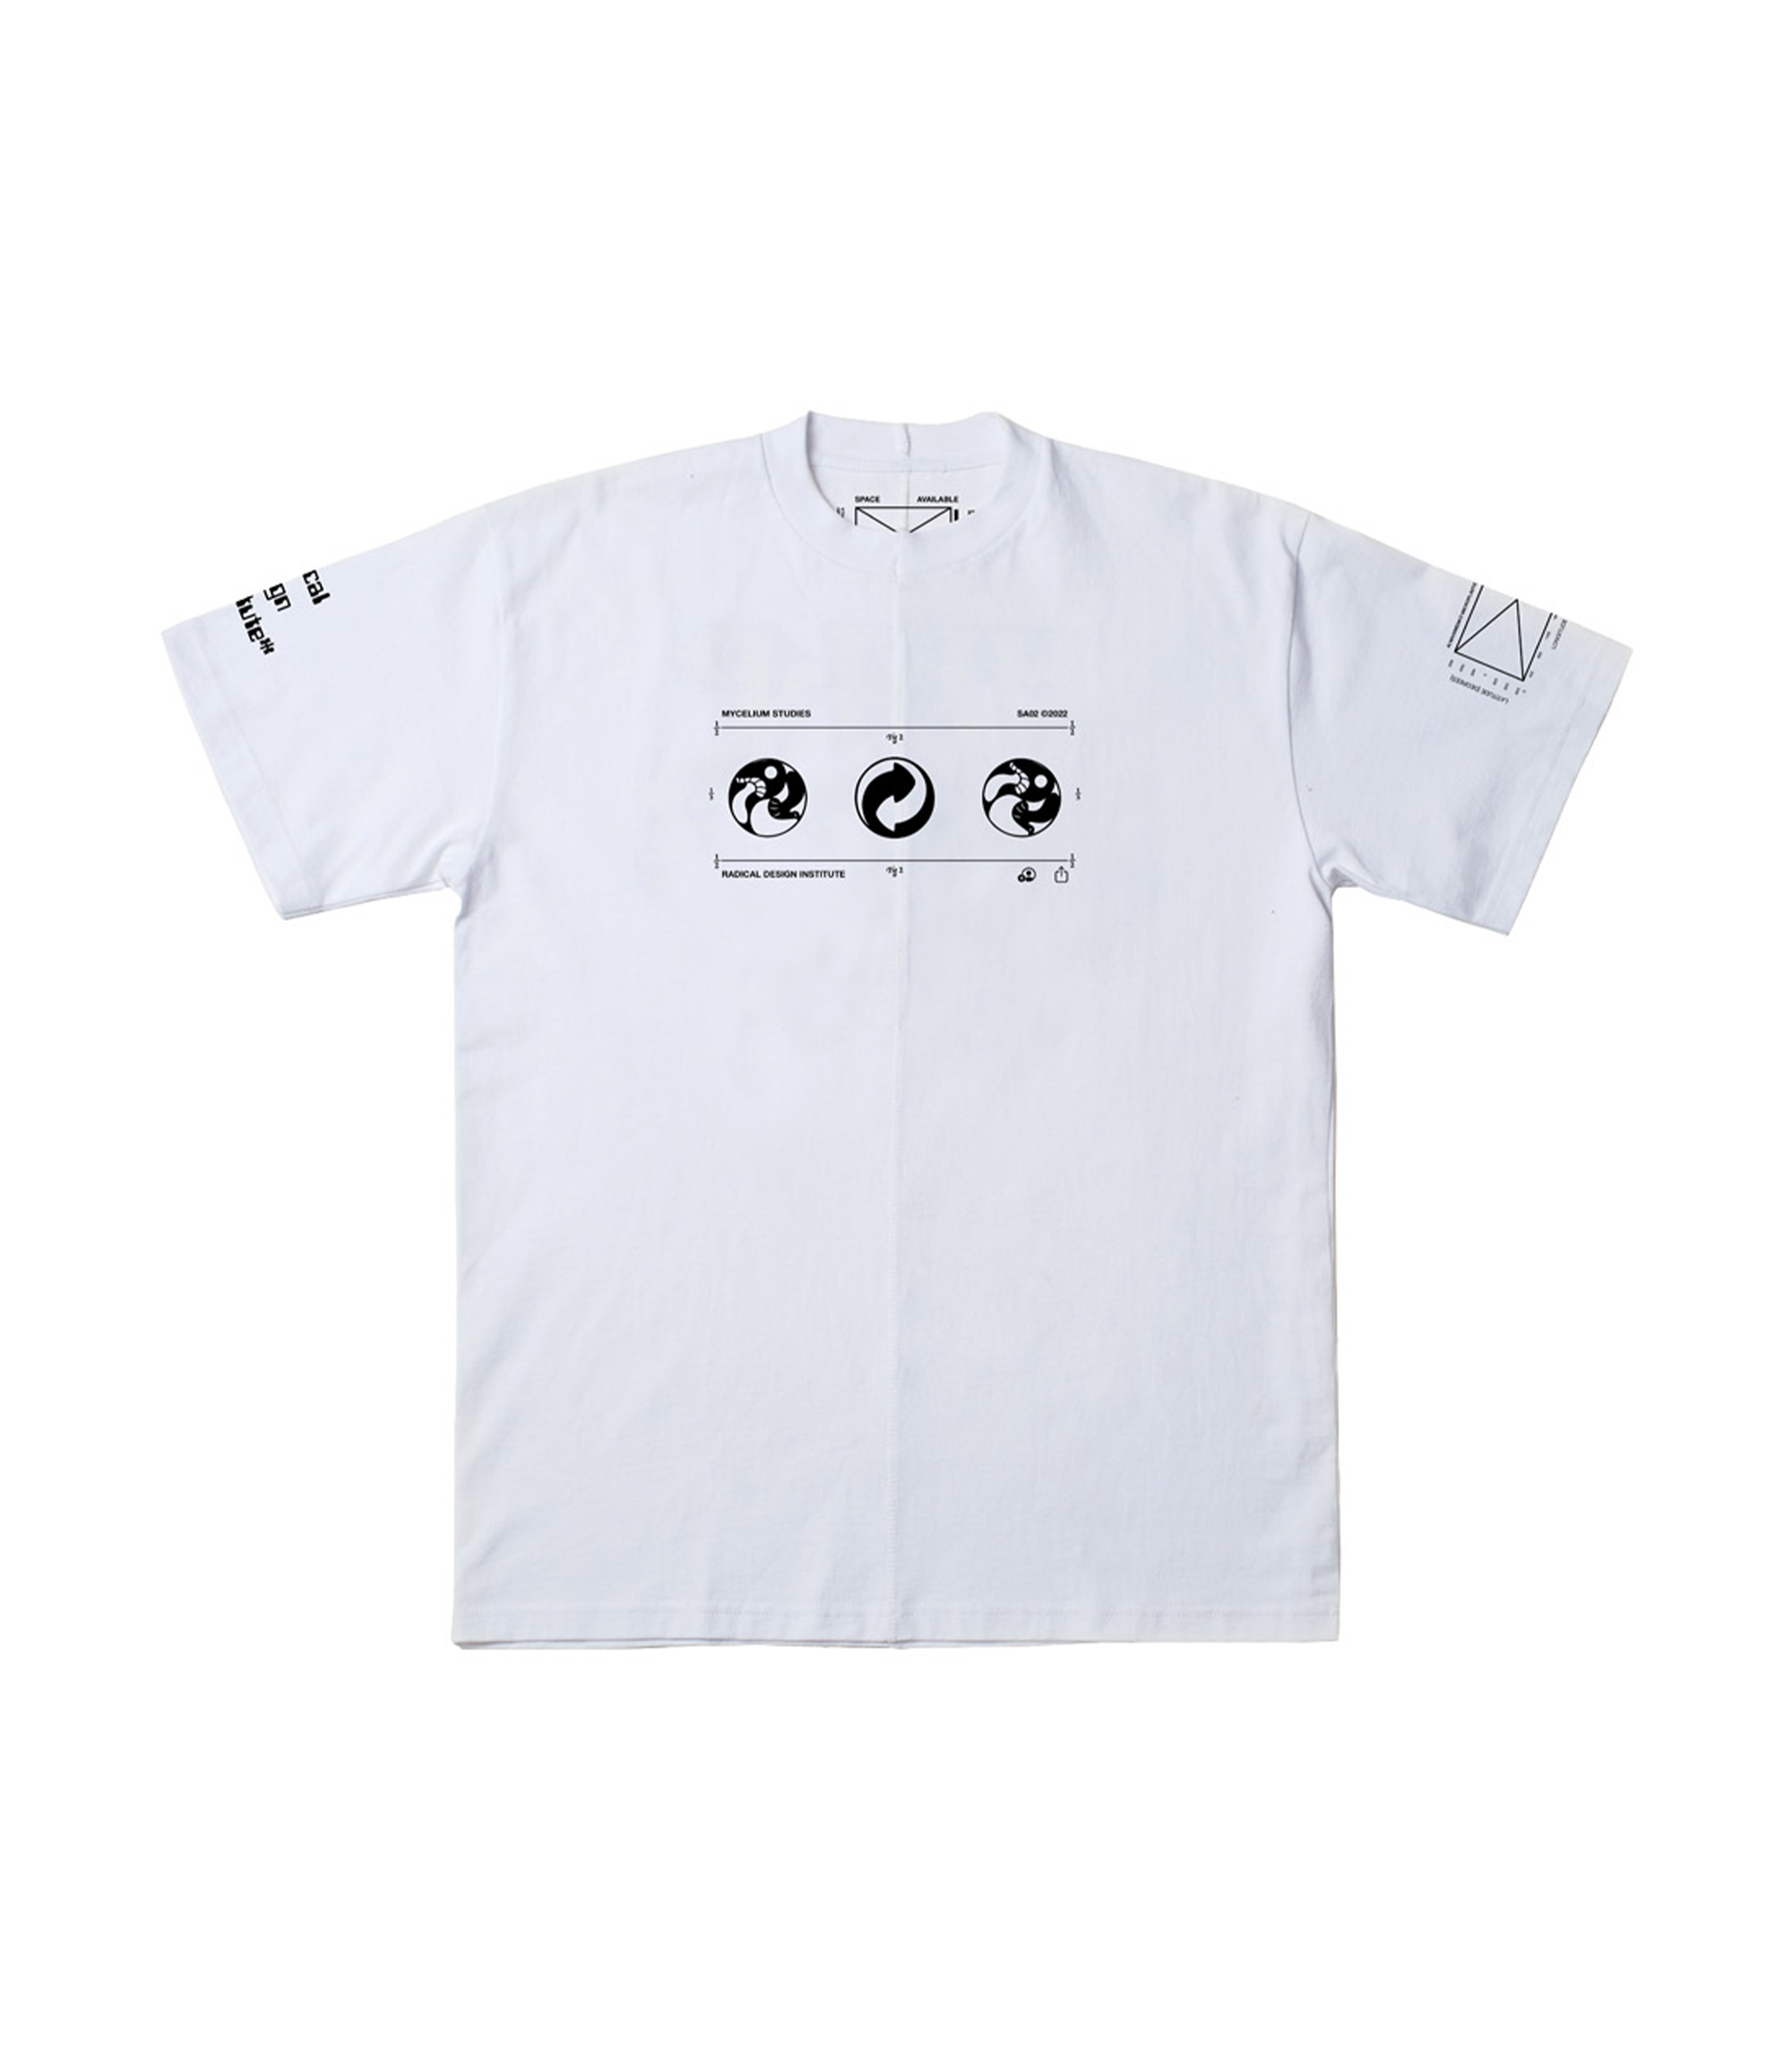 Upcycled Case Study T-shirt - White